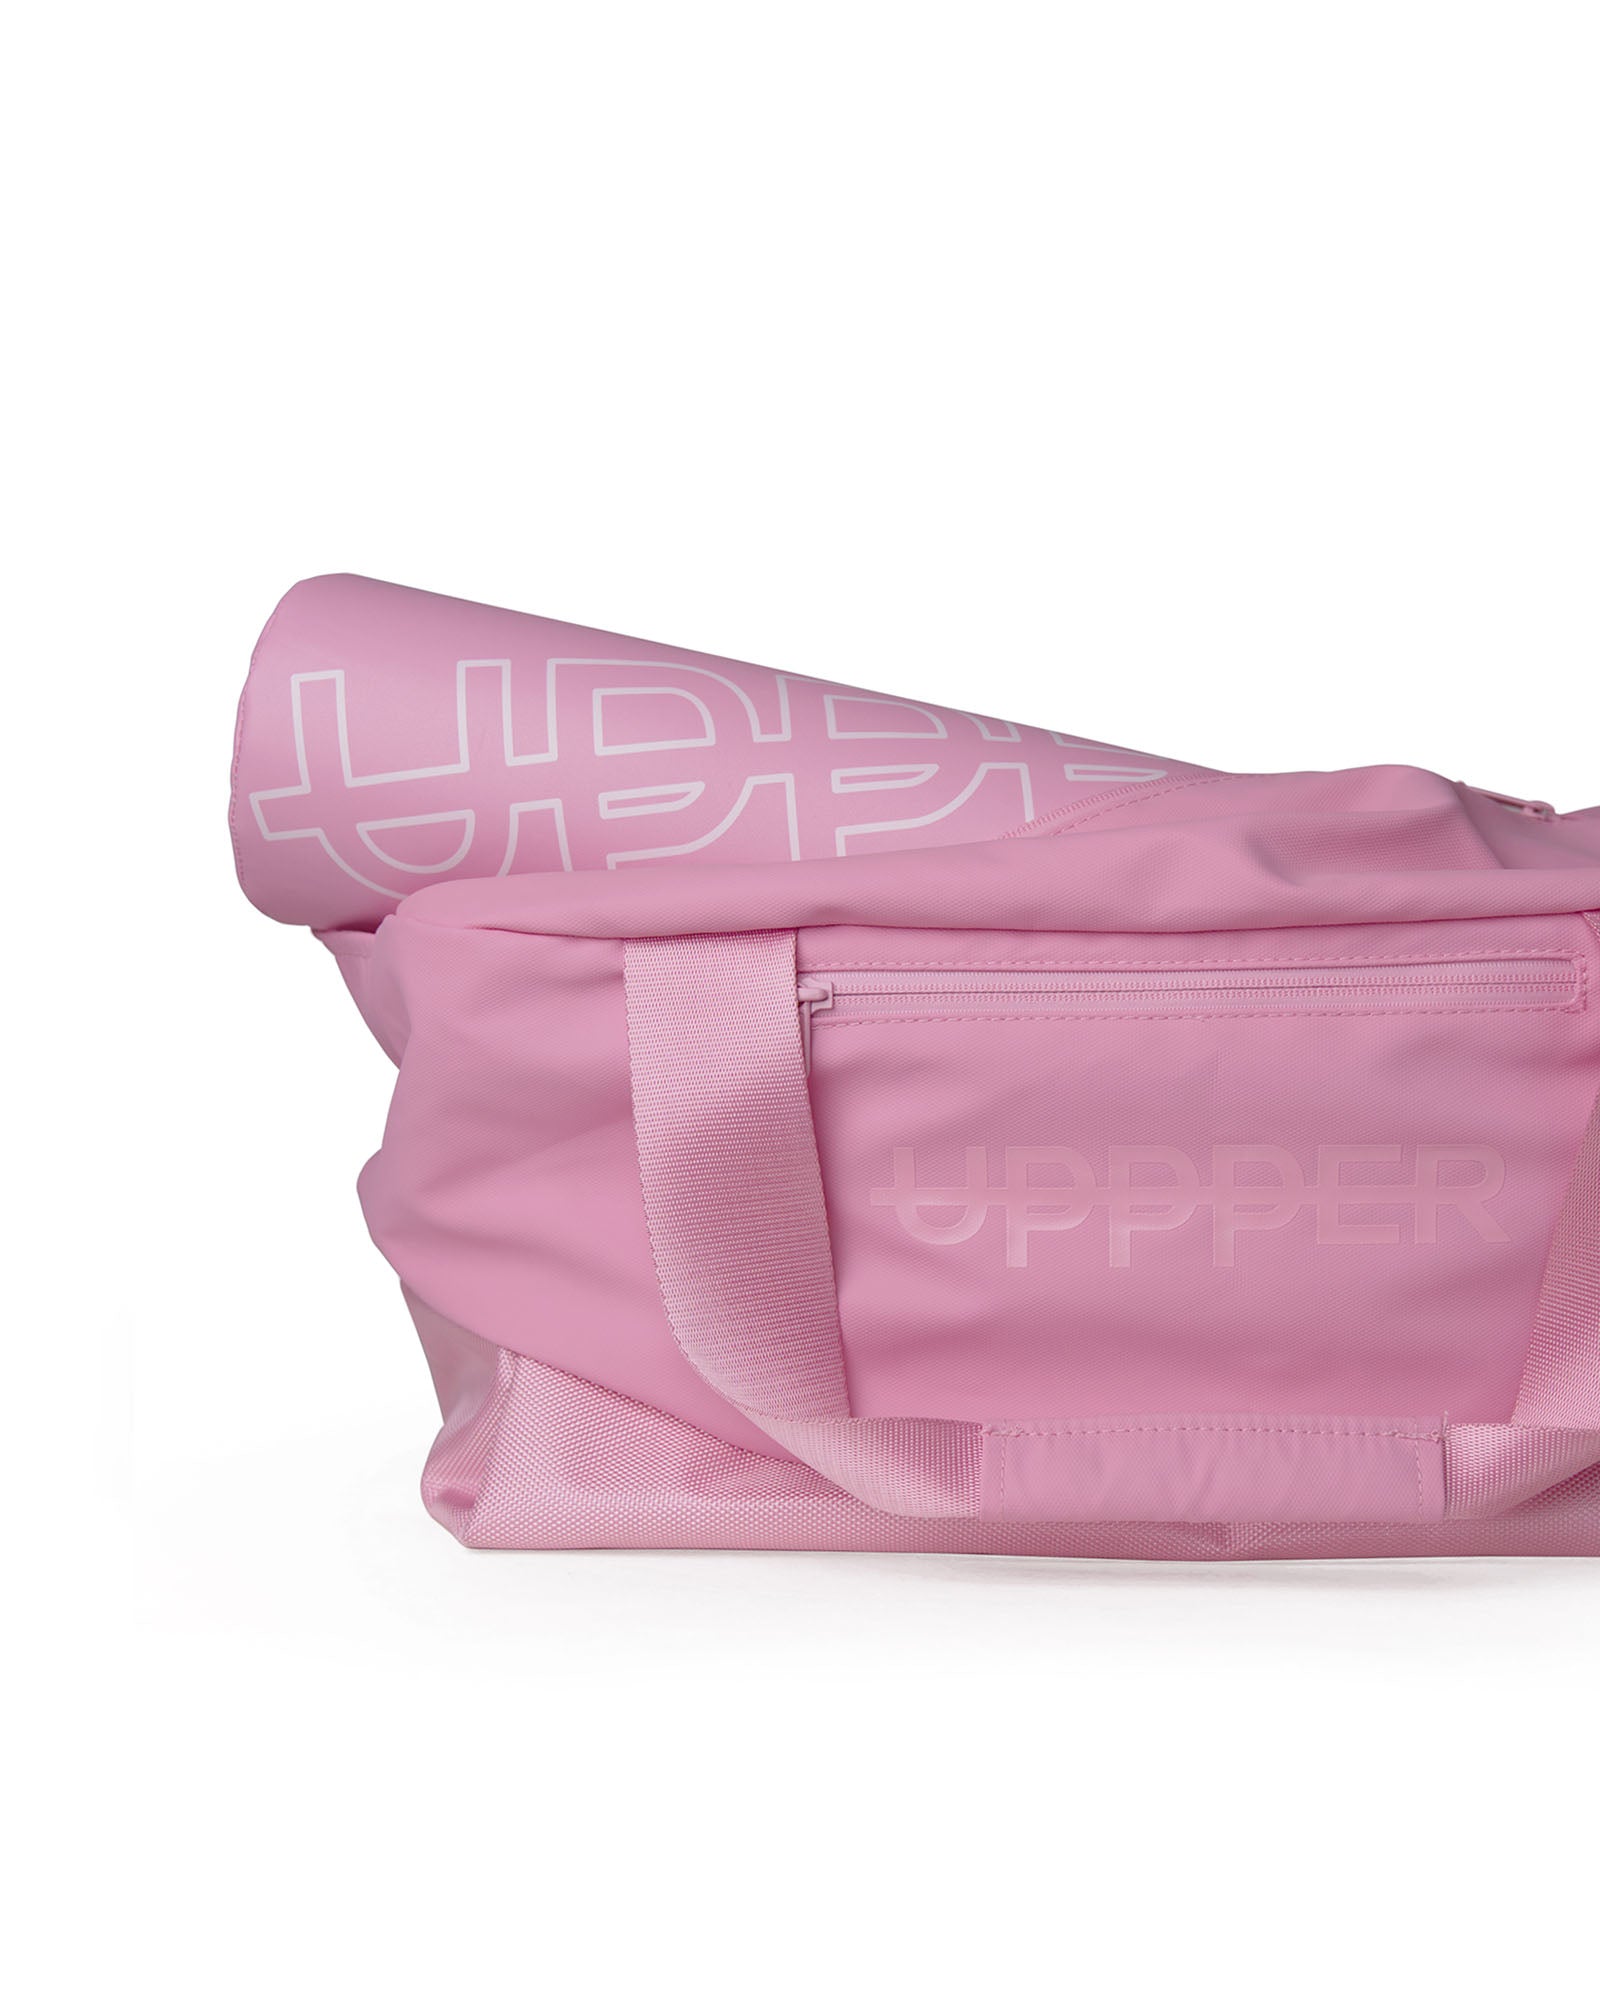 Duffel bag – 917 Pink Pig | PORSCHE SHOP